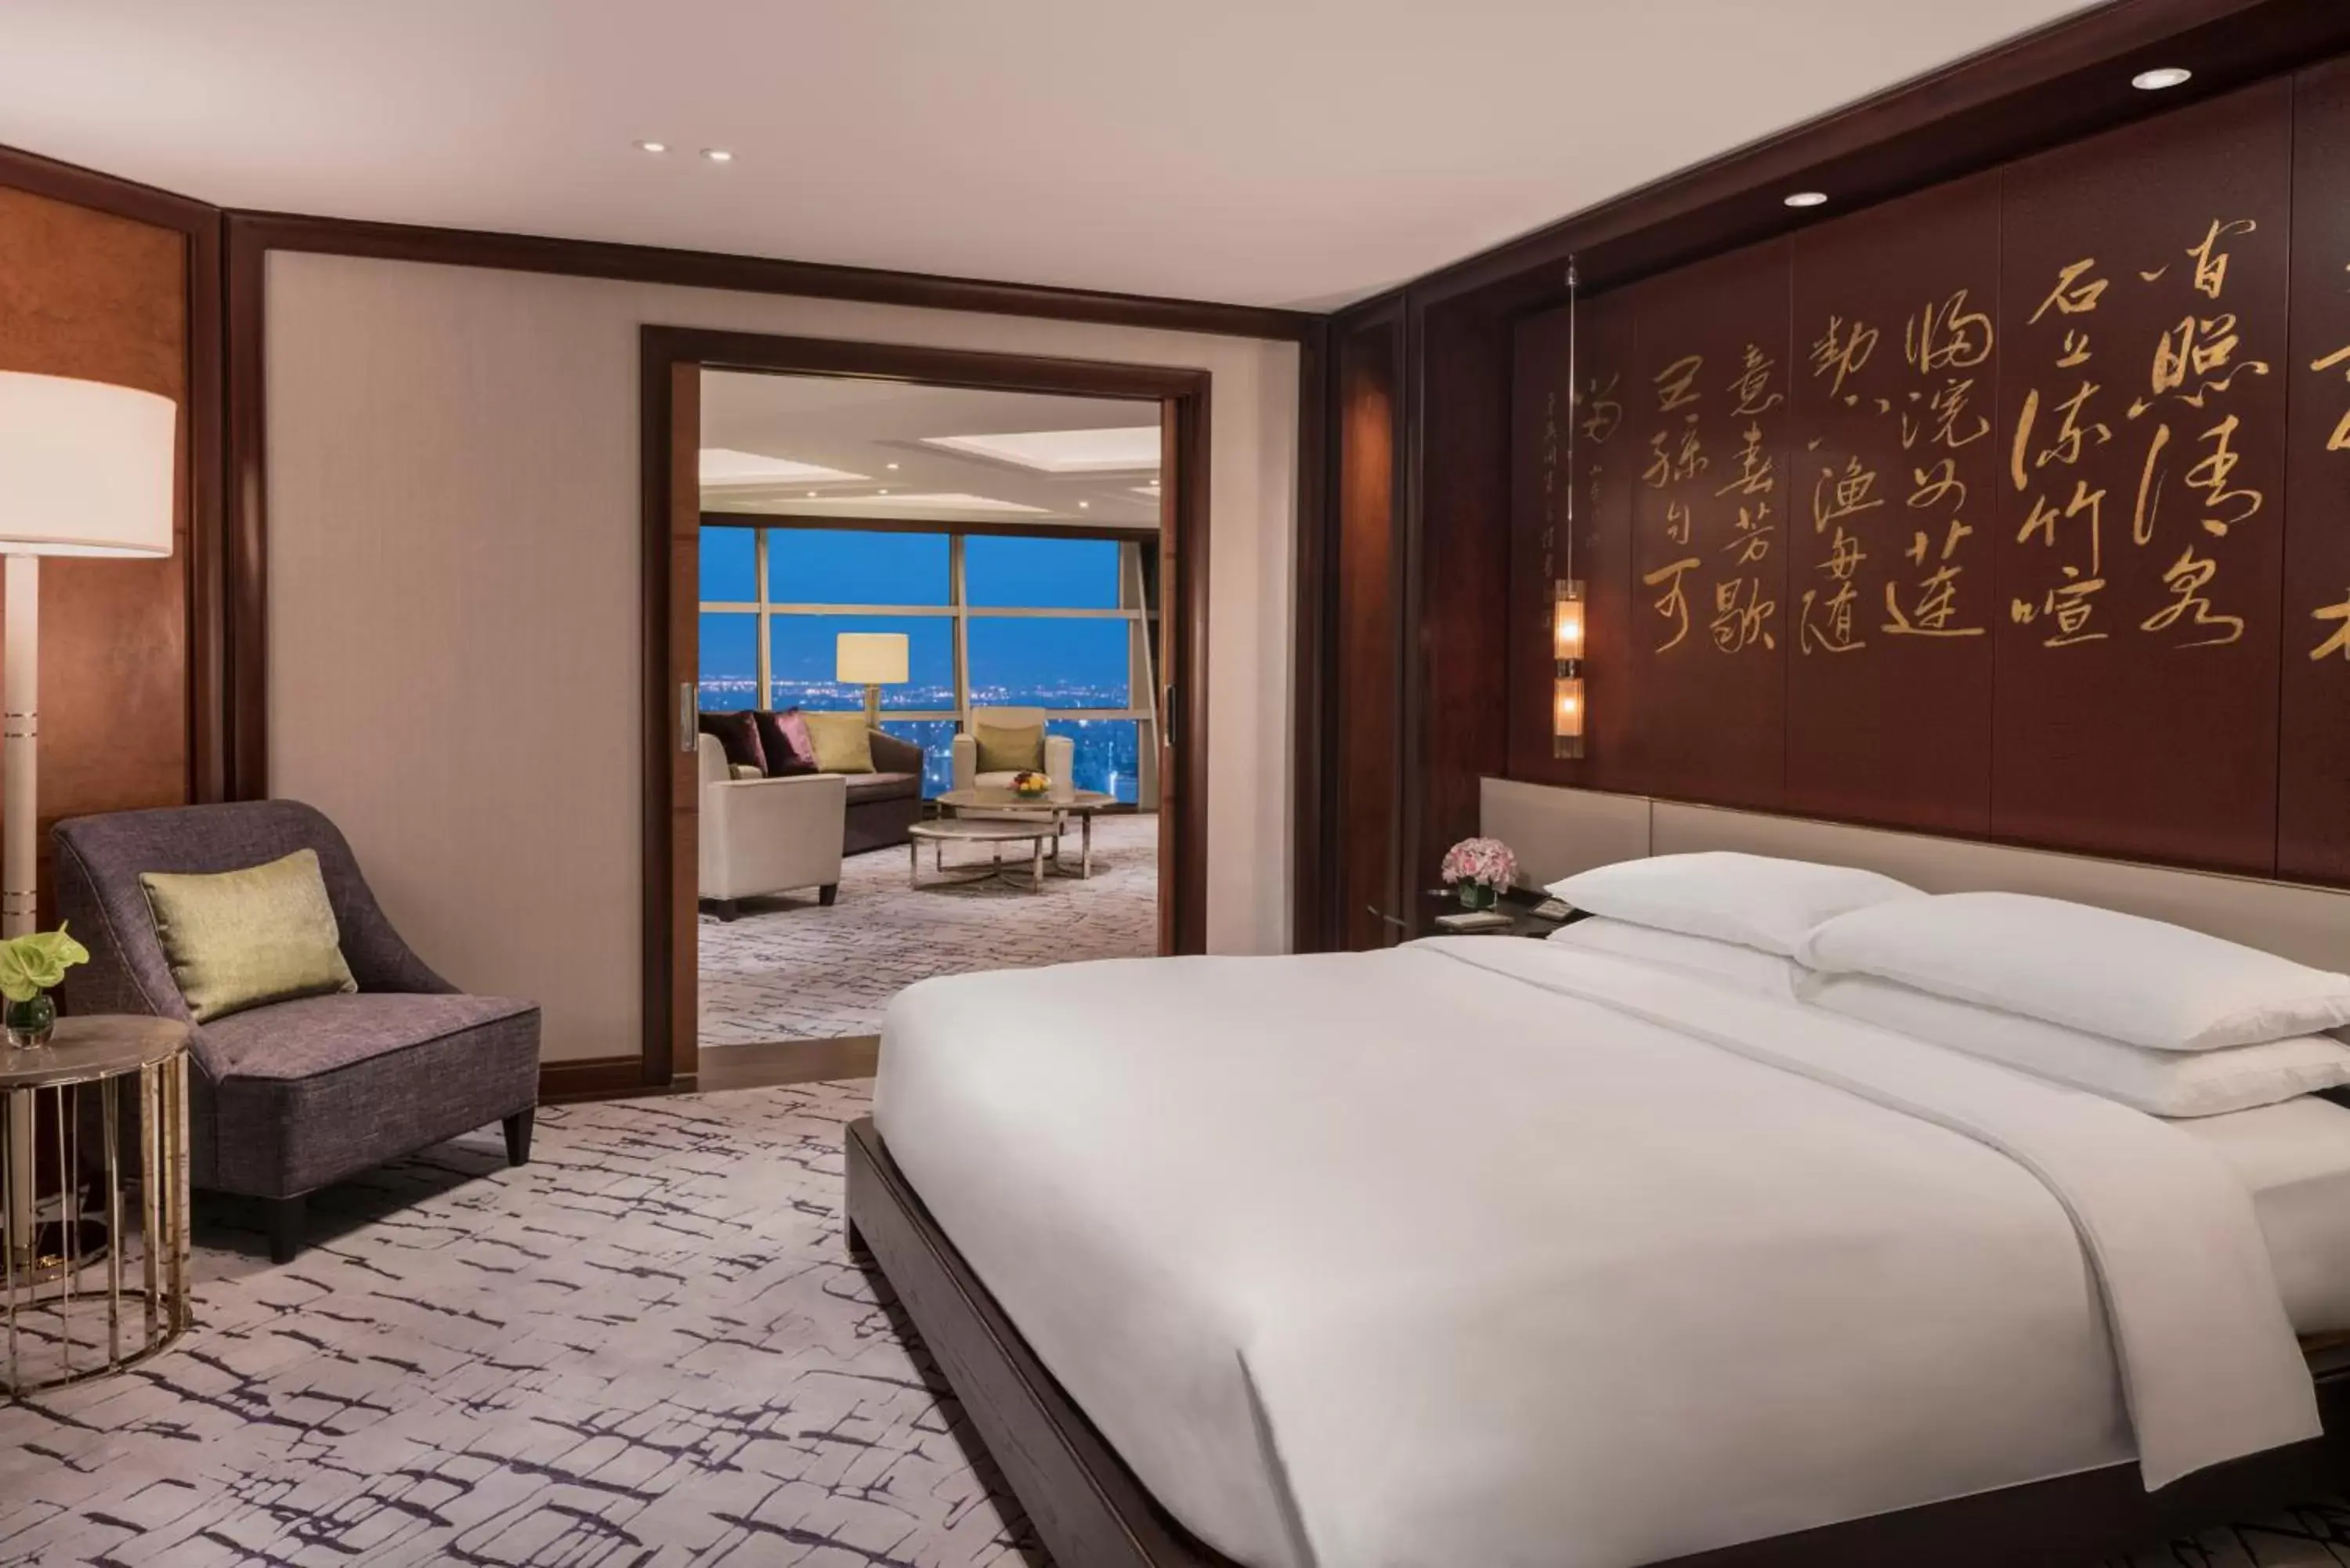 Diplomat Suite - single occupancy in Grand Hyatt Shanghai